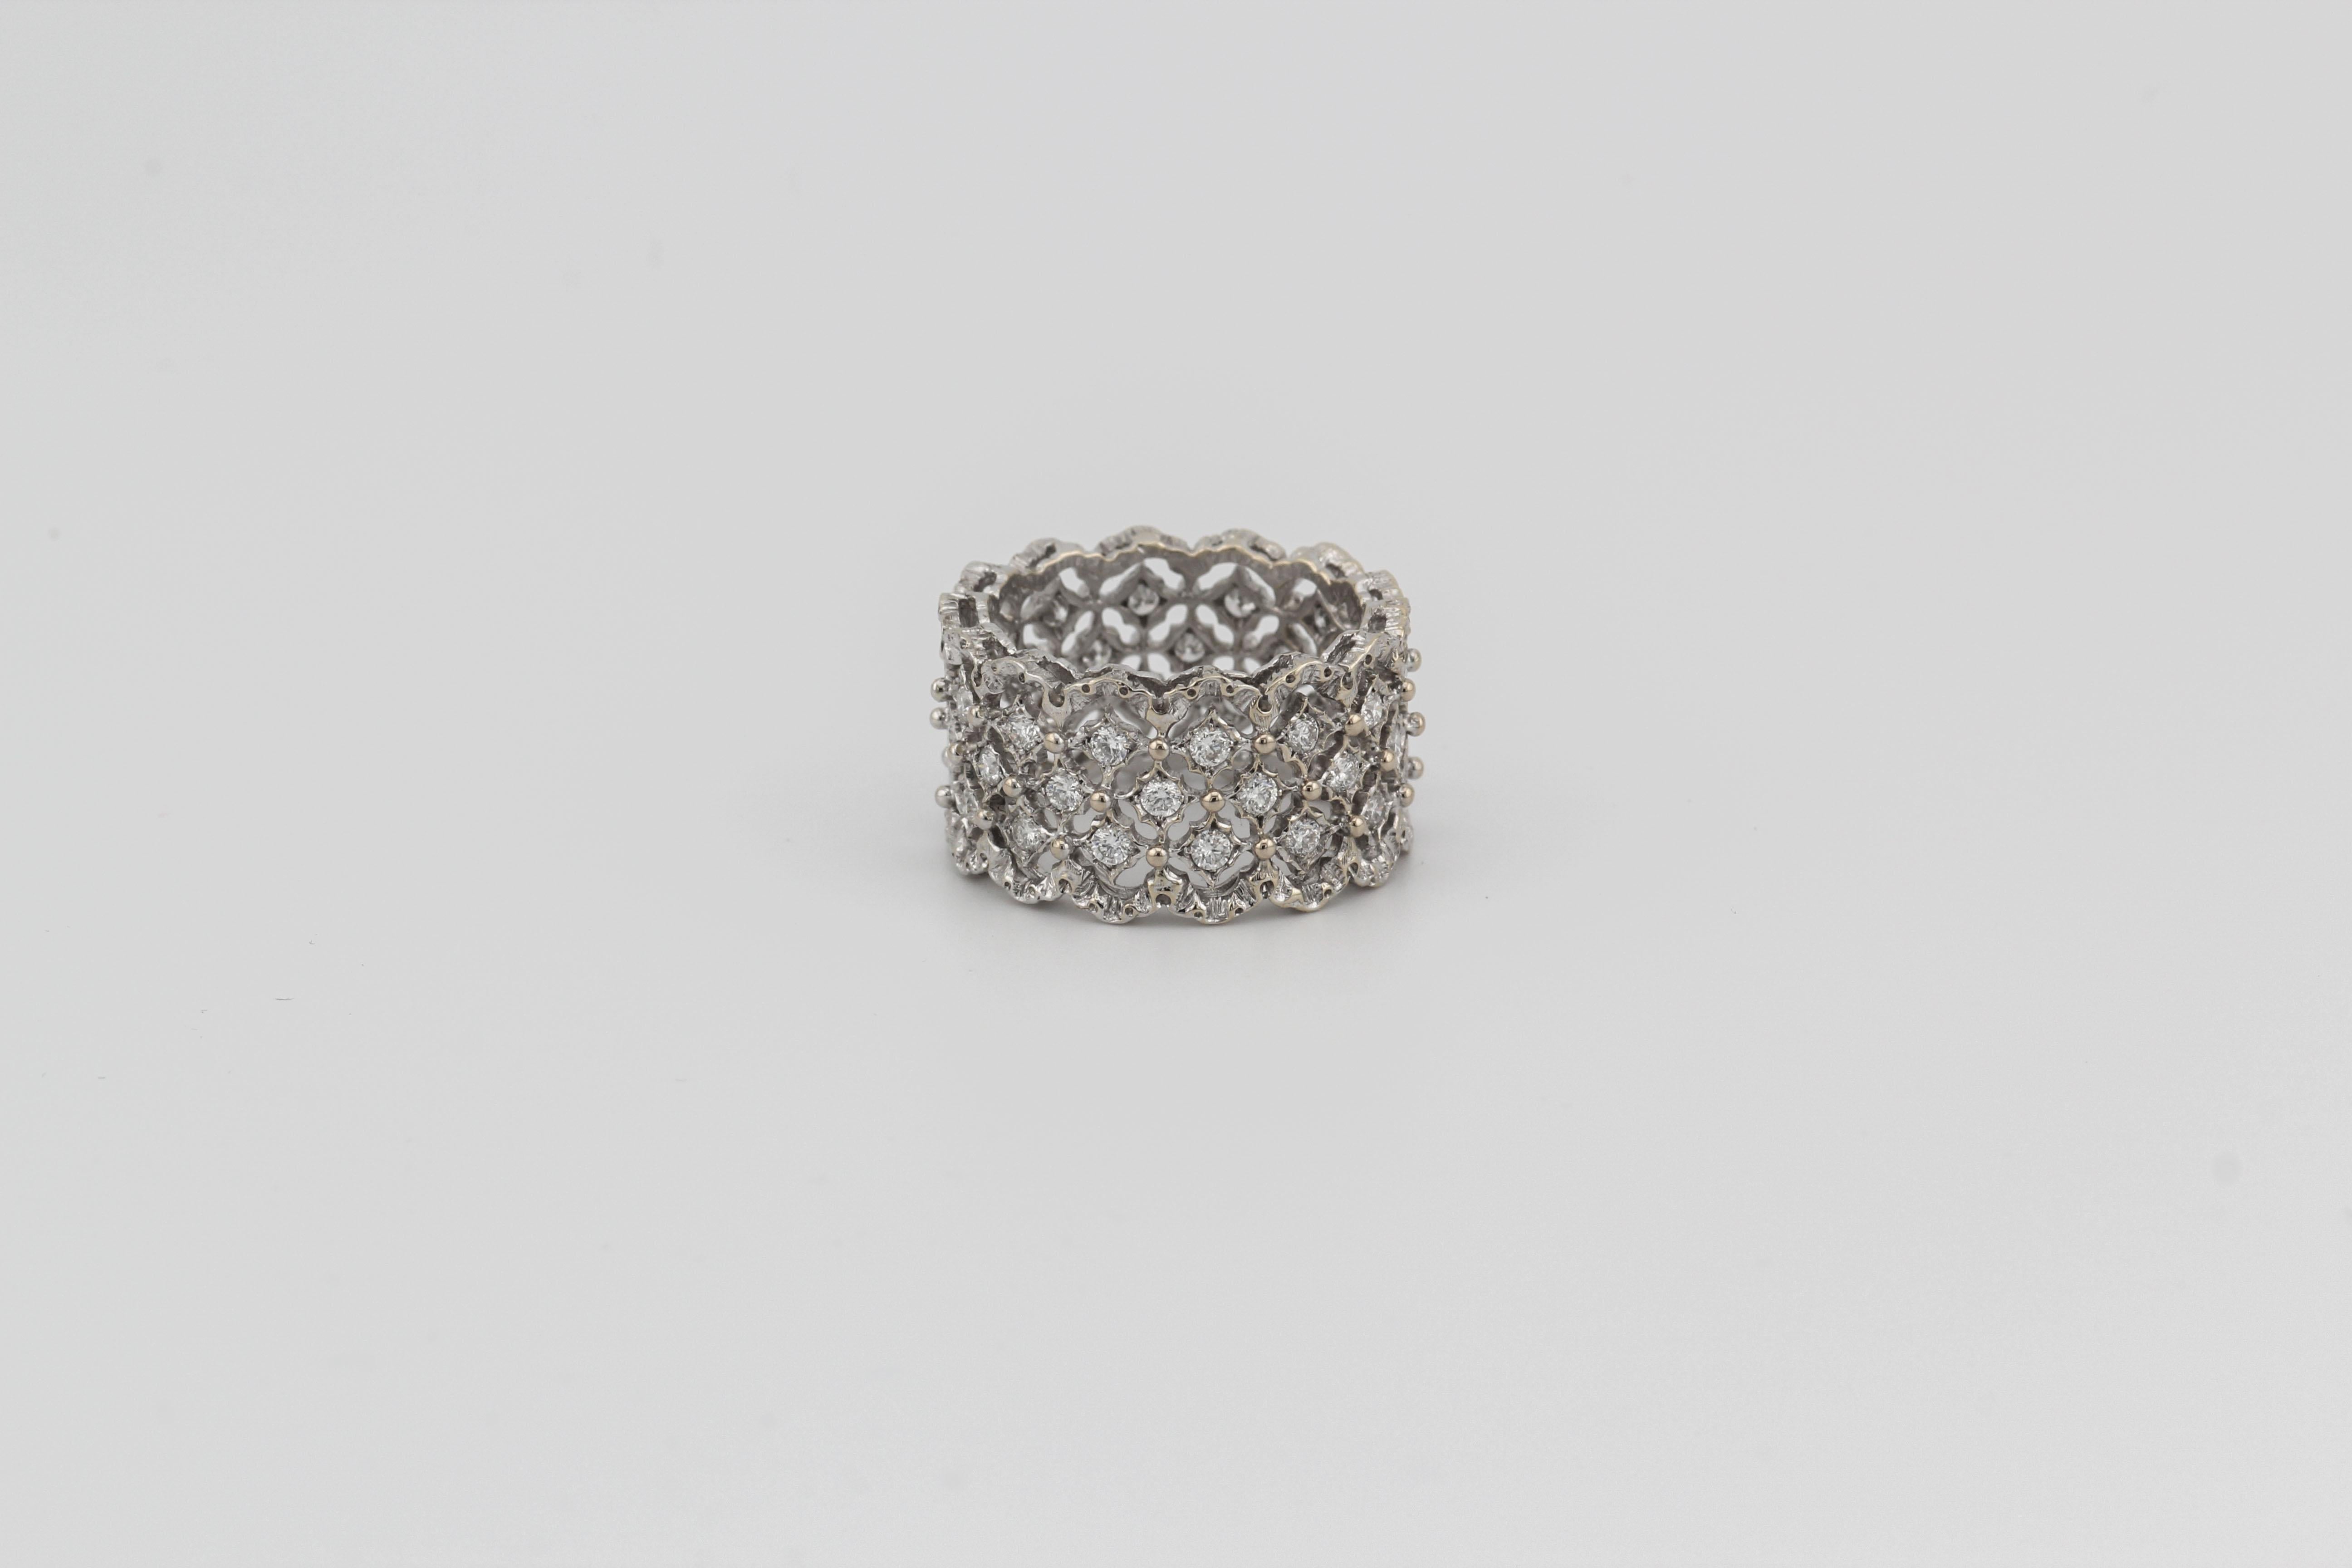 Laissez-vous séduire par l'élégance intemporelle de ce bracelet Rombi Eternelle en or blanc 18k avec diamants de Mario Buccellati. Méticuleusement confectionné, ce bracelet témoigne de l'héritage de Buccellati en matière de création de bijoux